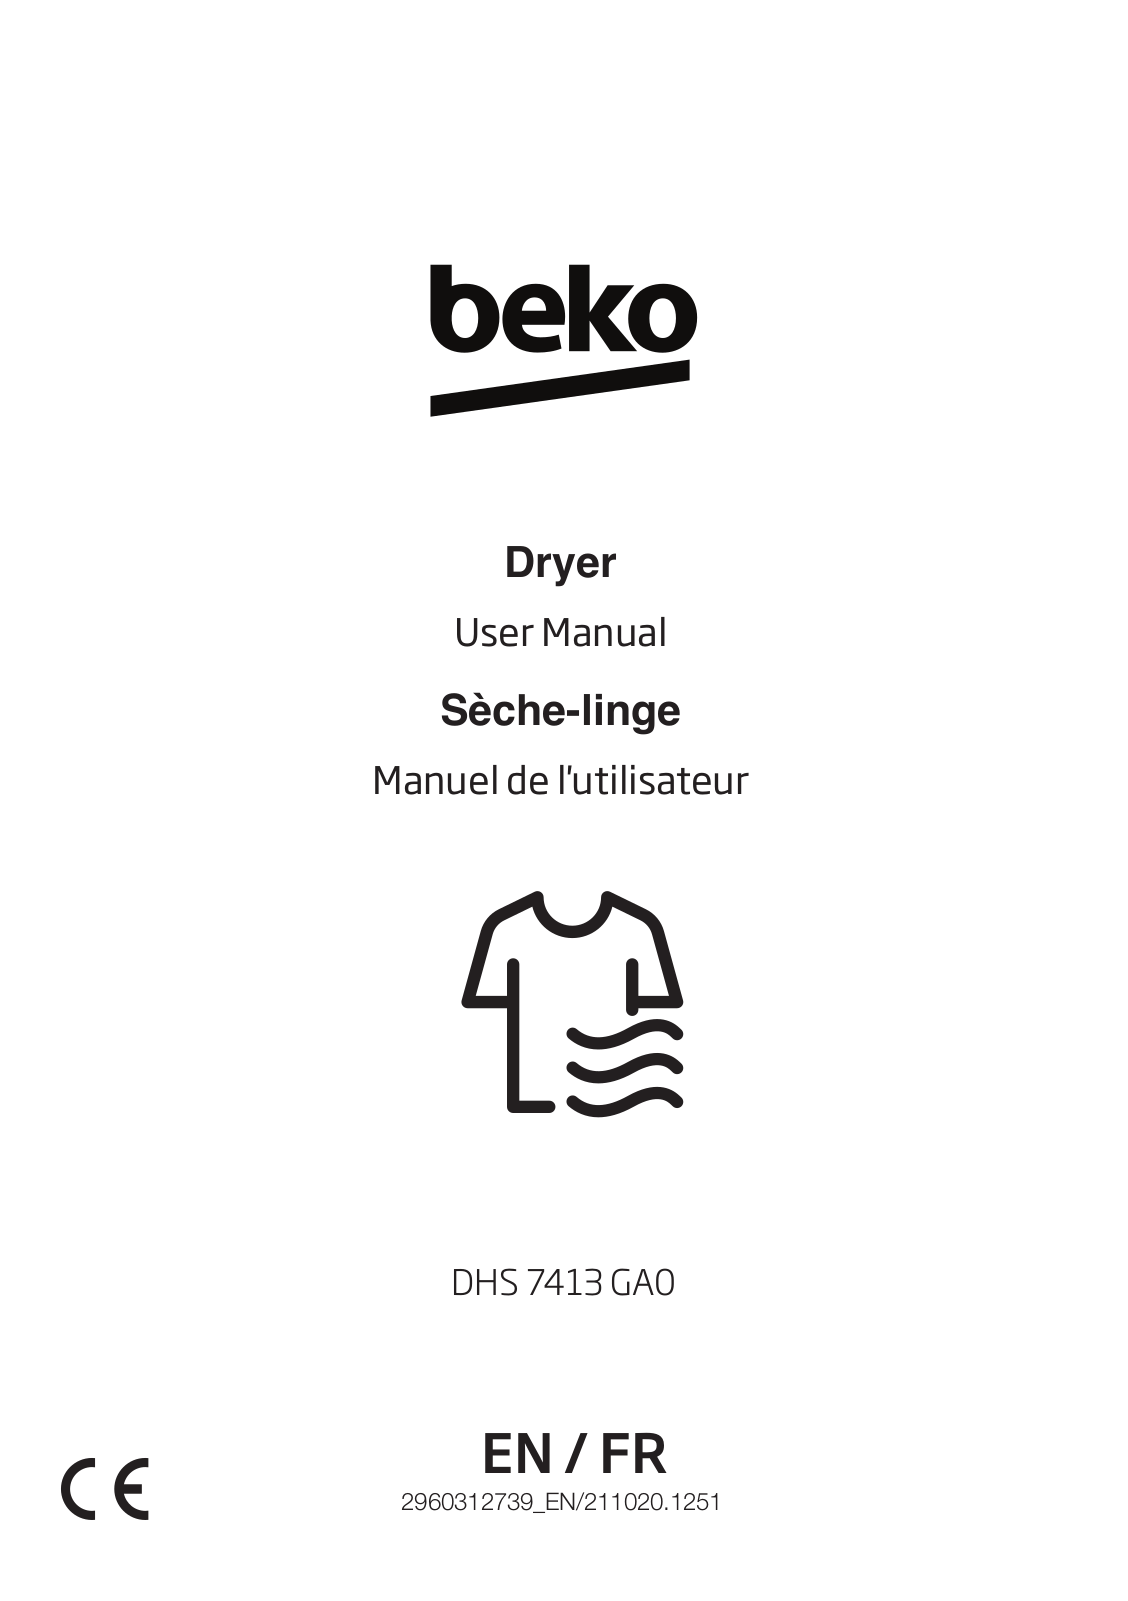 Beko DHS 7413 GA0 User manual